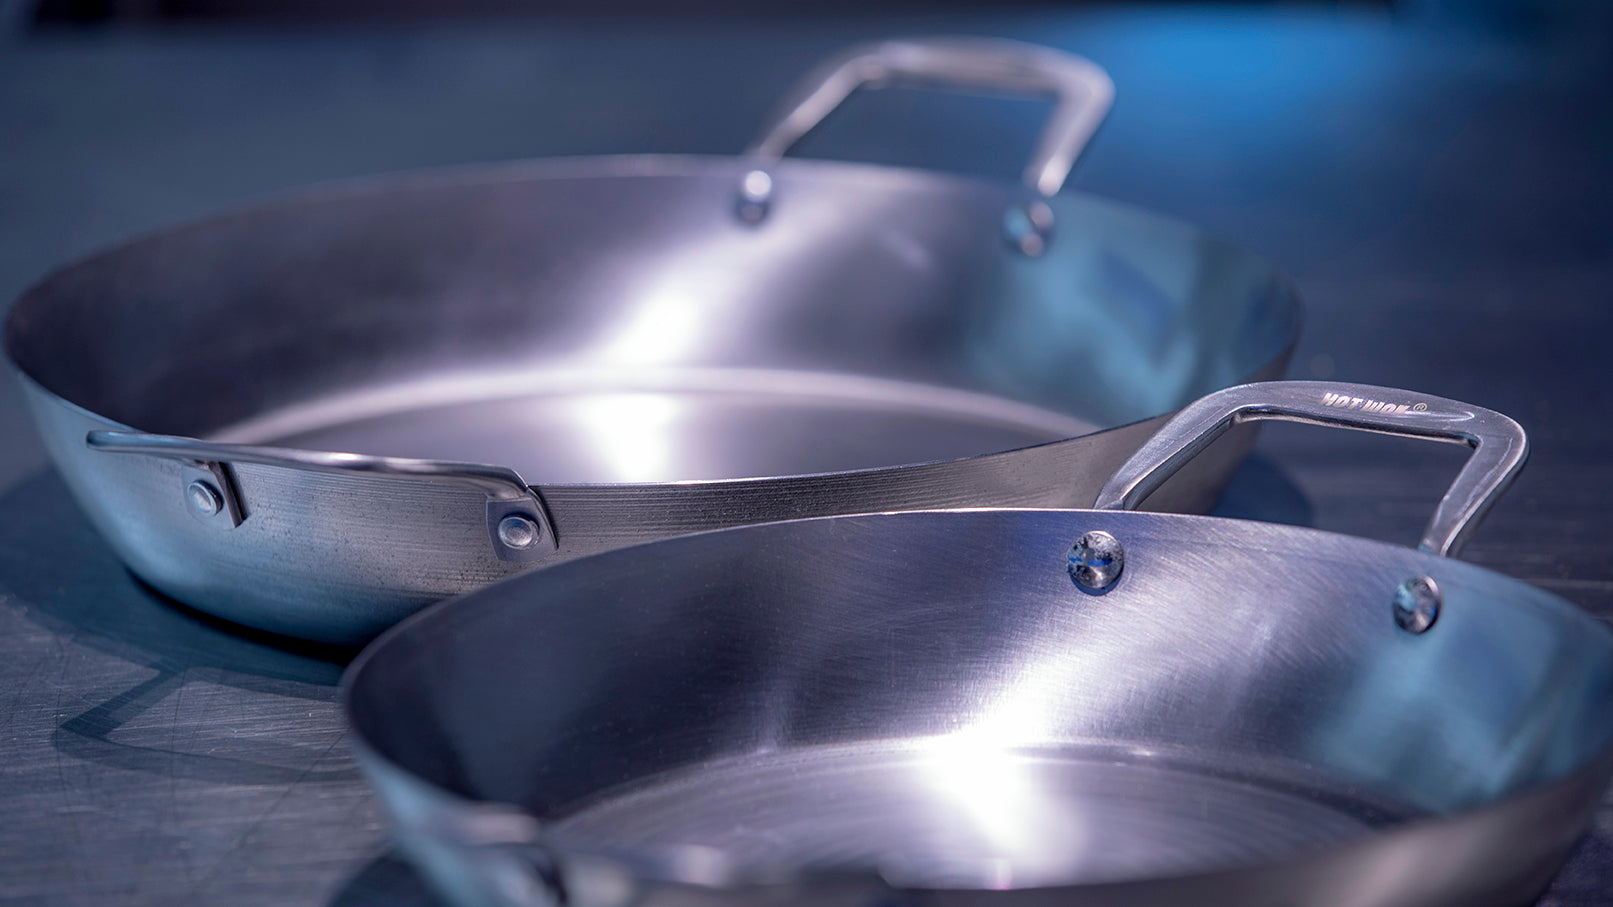 Preparing your paella pan before use.